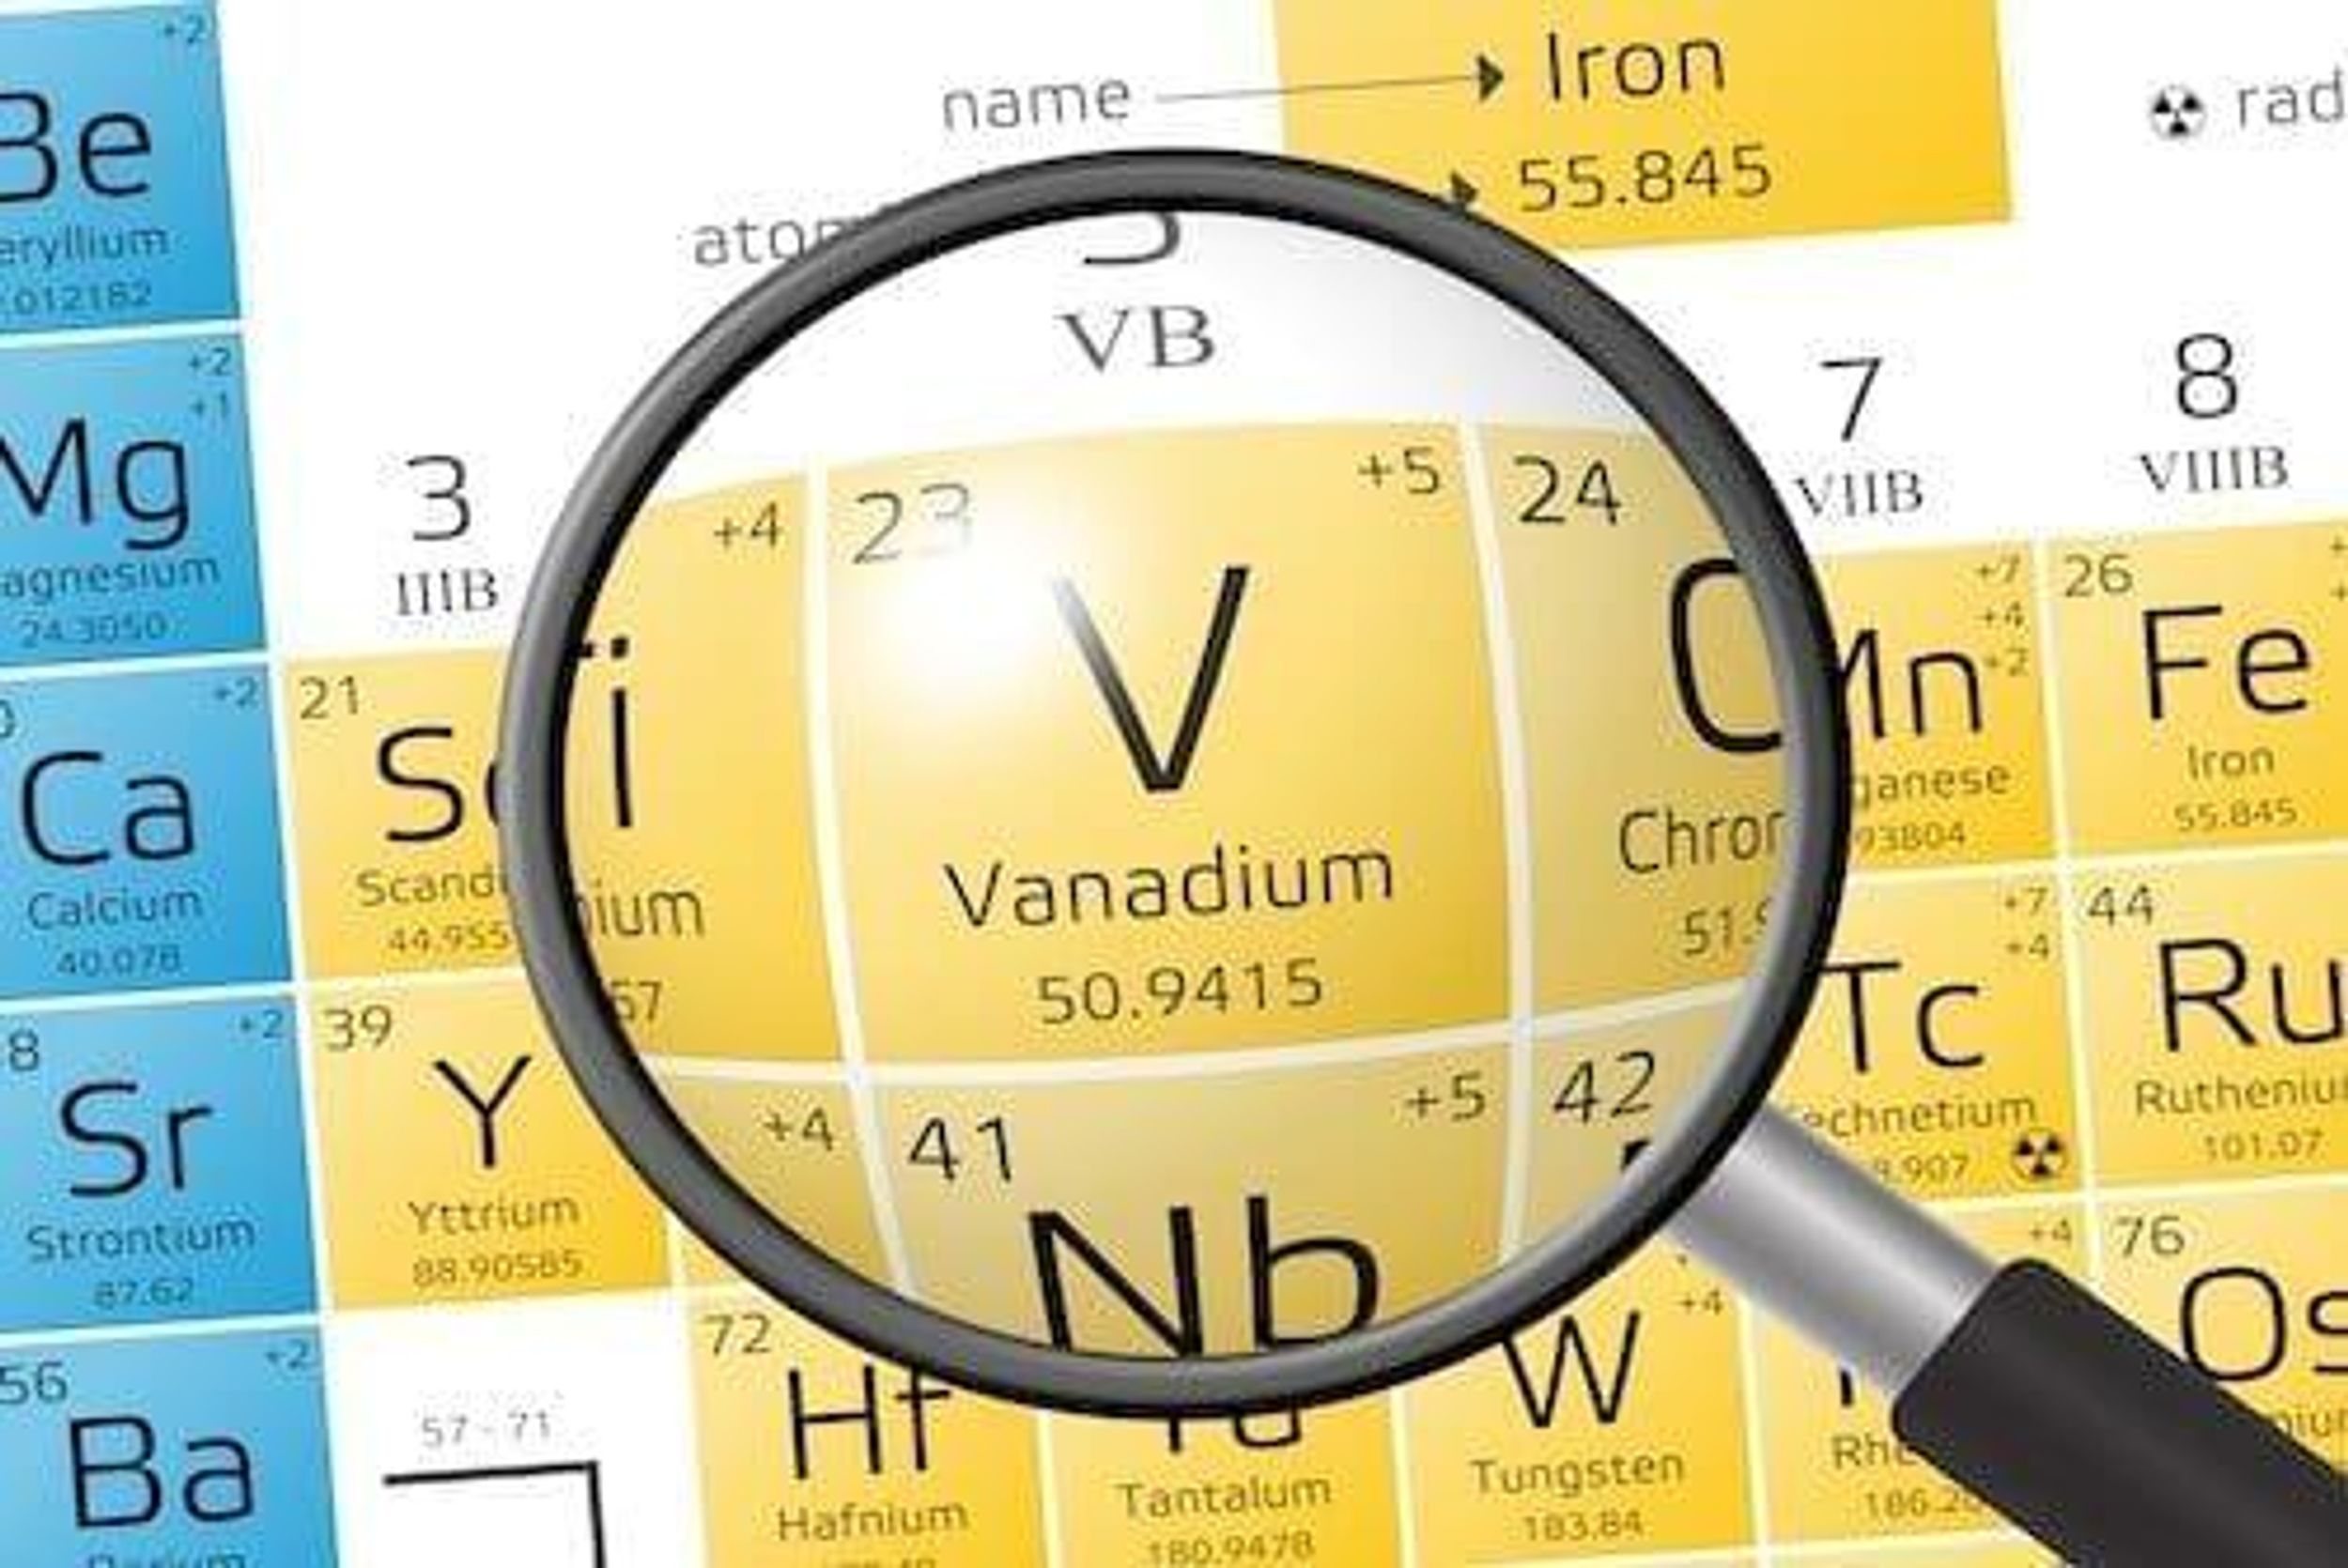 Venus Metals Confirms Vanadium Resource at Youanmi